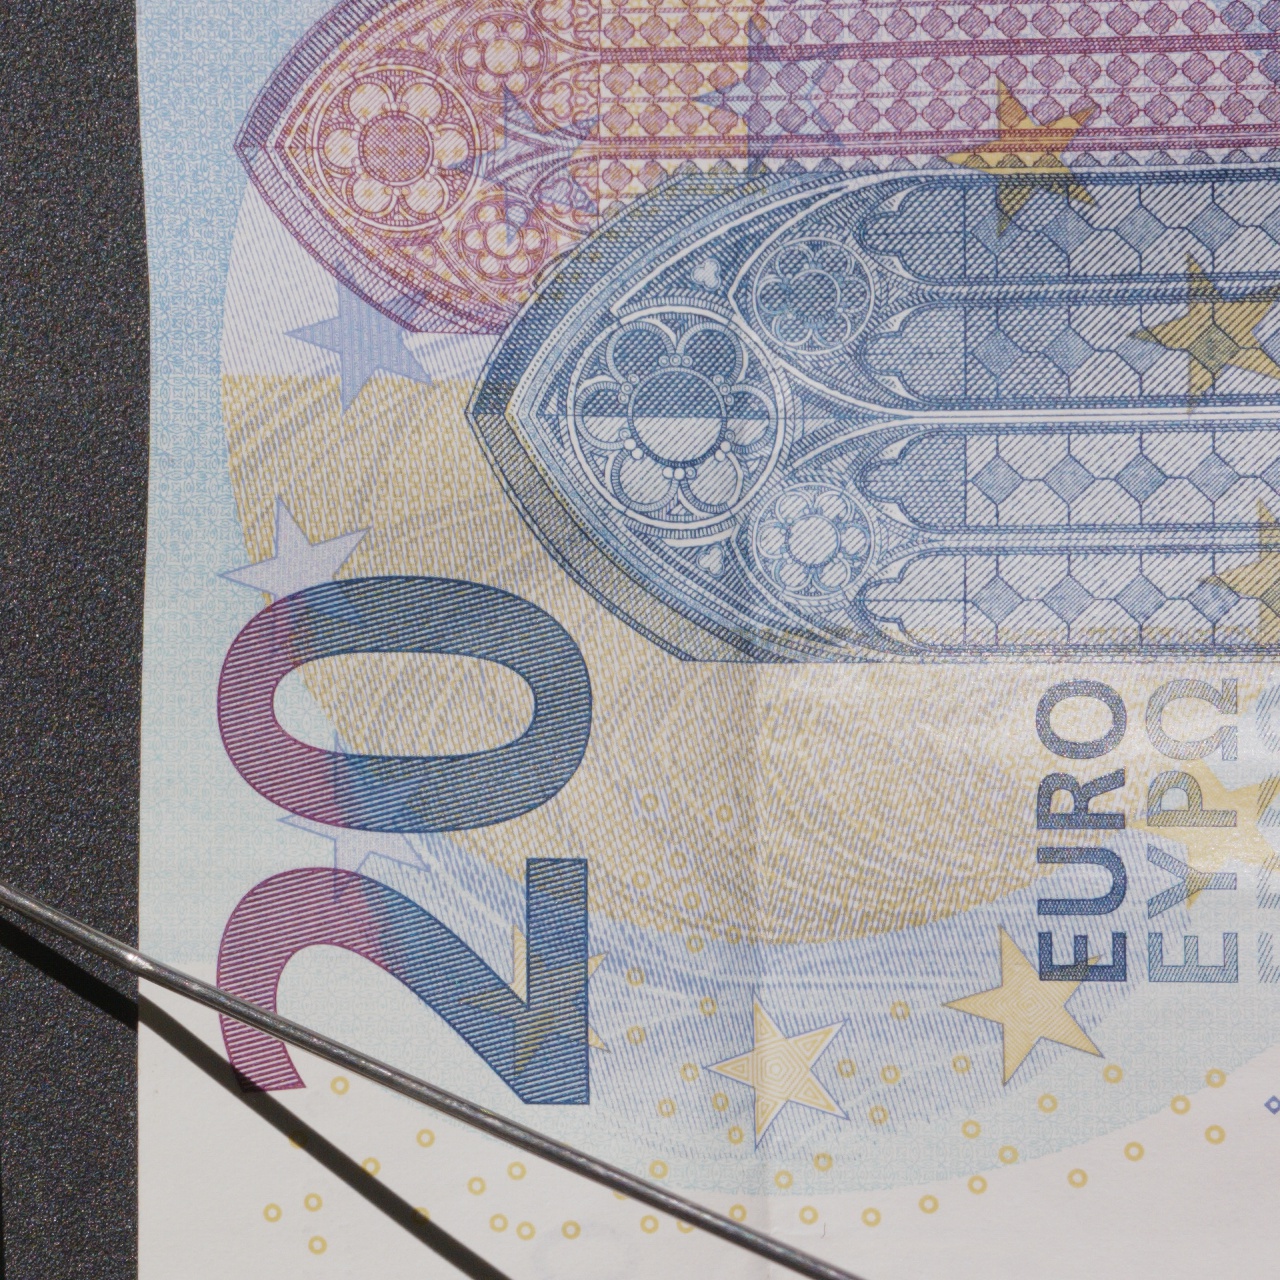 Euro_Banknotes_Detail_DNG.jpg